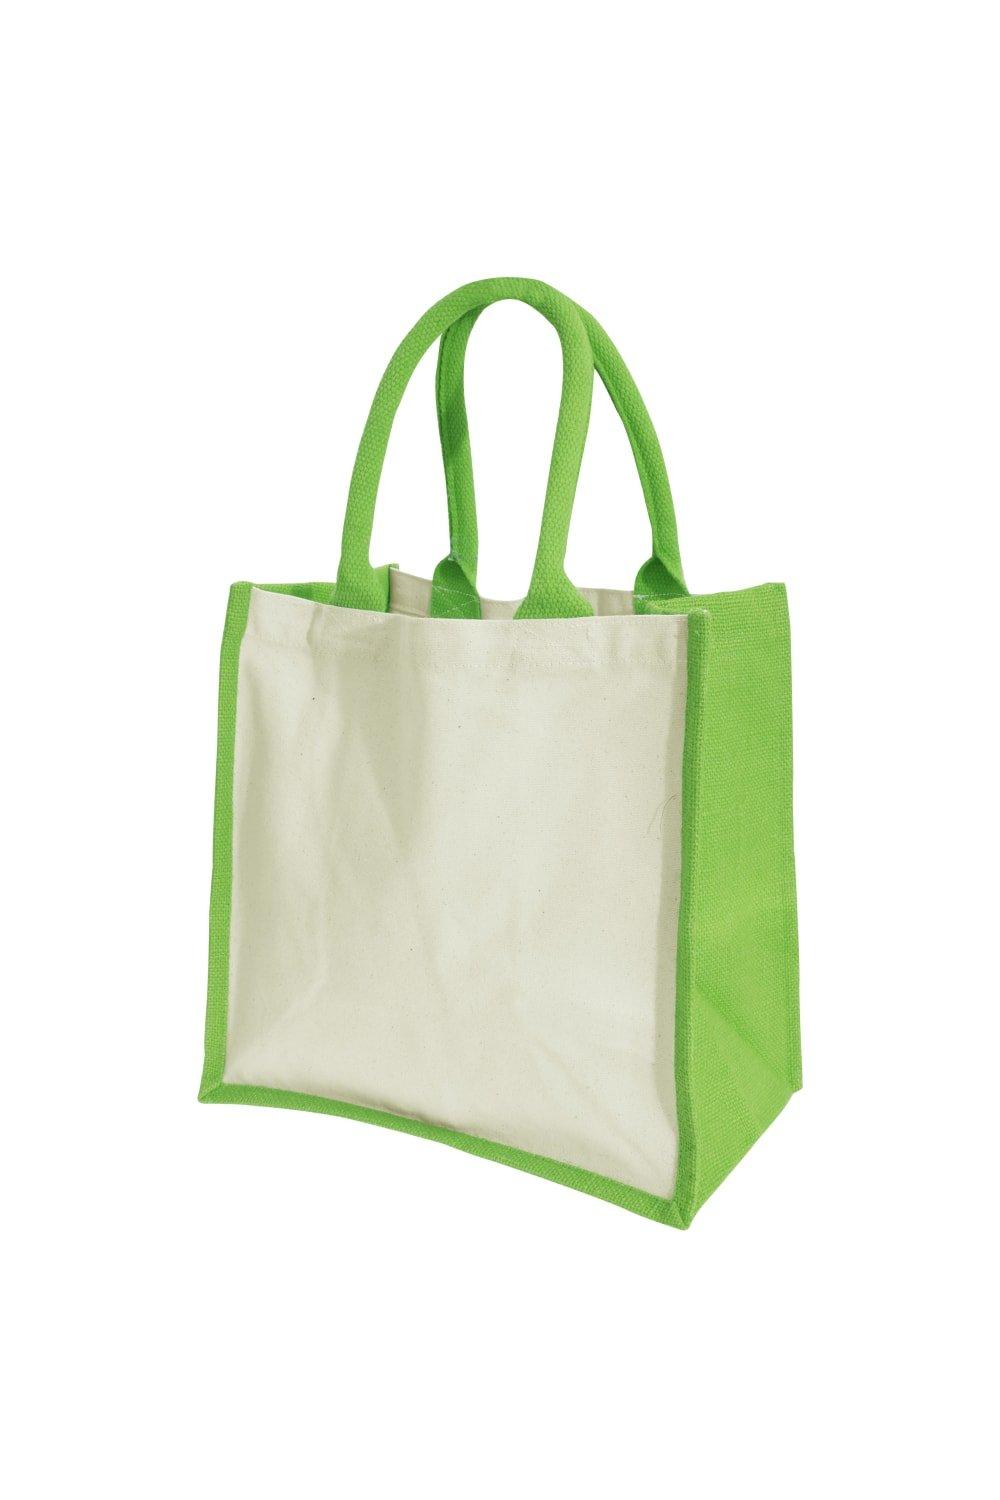 Джутовая сумка-миди для принтеров (14 литров) (2 шт. в упаковке) Westford Mill, зеленый